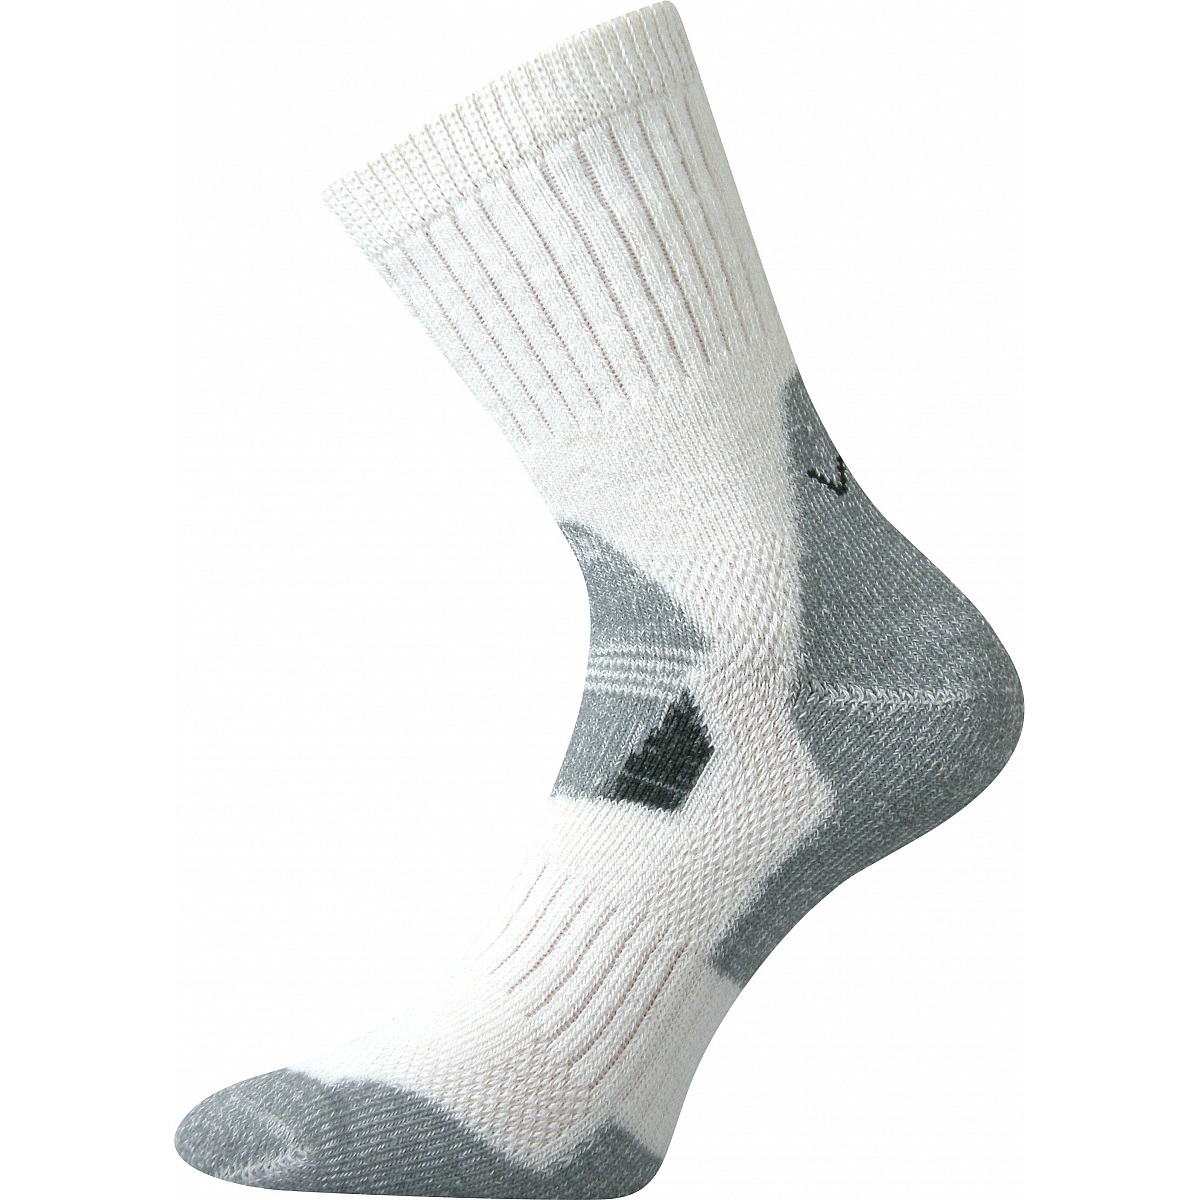 Extra teplé vlněné ponožky Voxx Stabil - bílé-šedé, 43-46